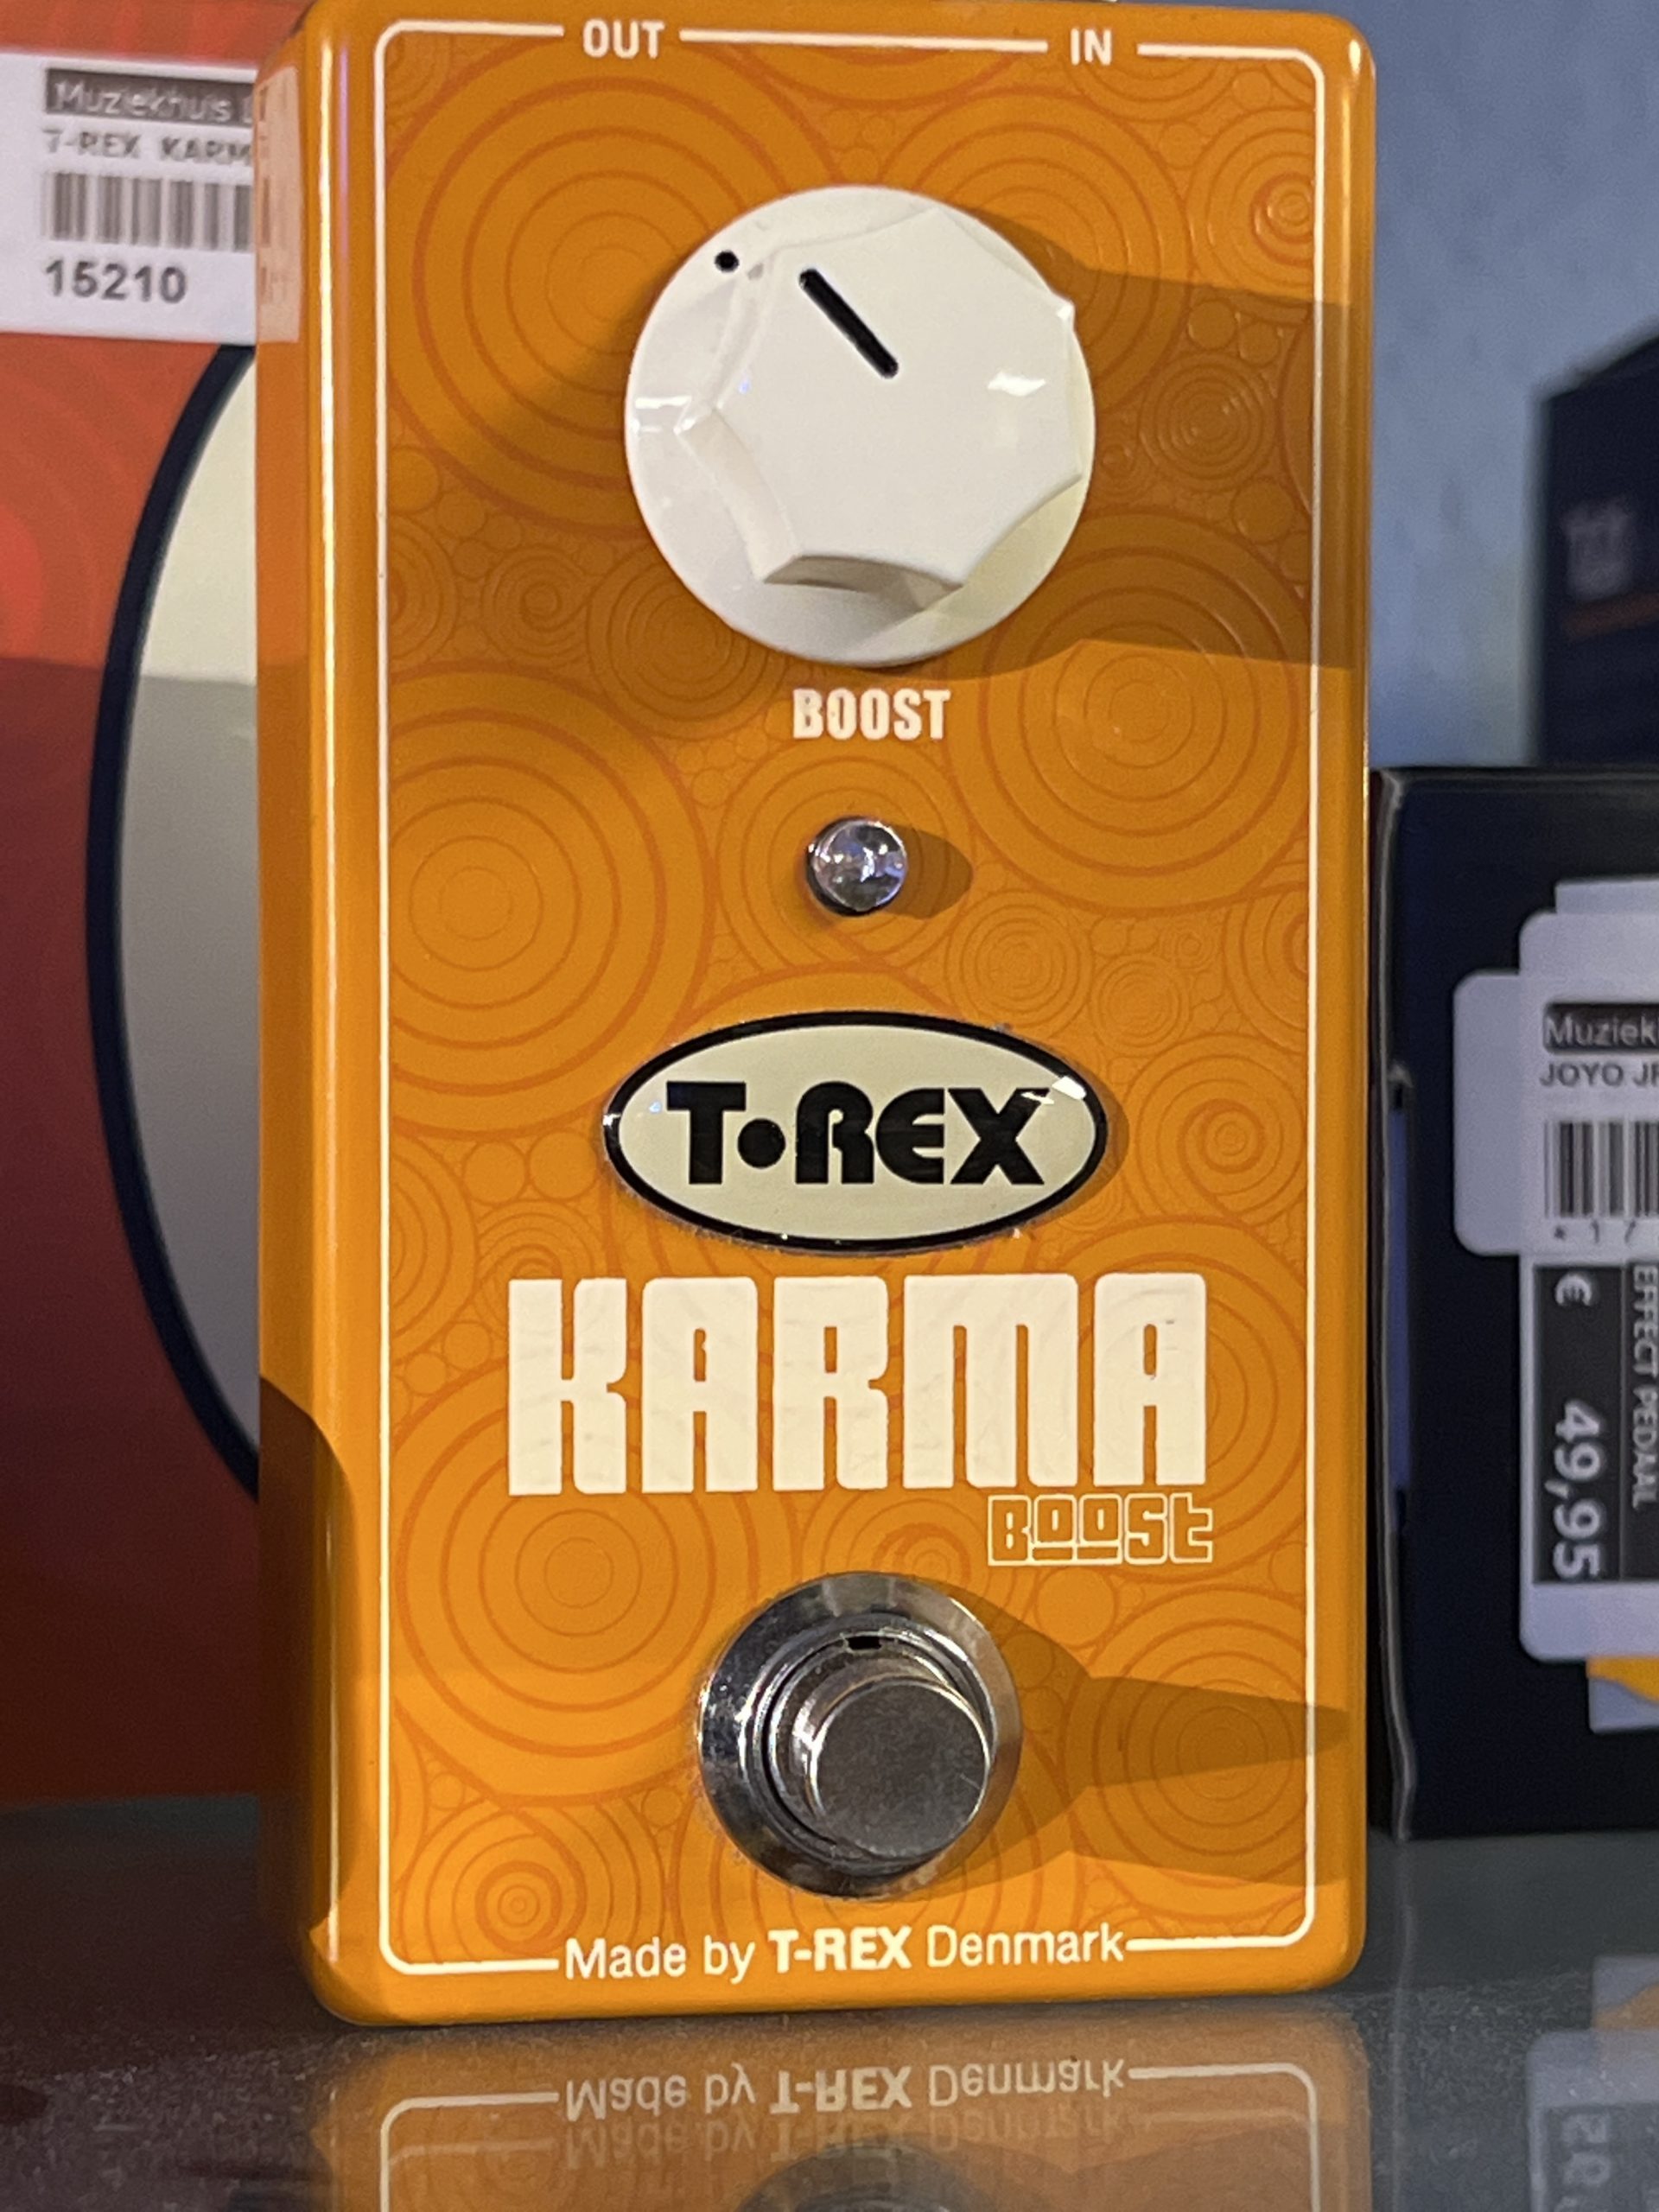 T-Rex karma boost kb0050 Booster